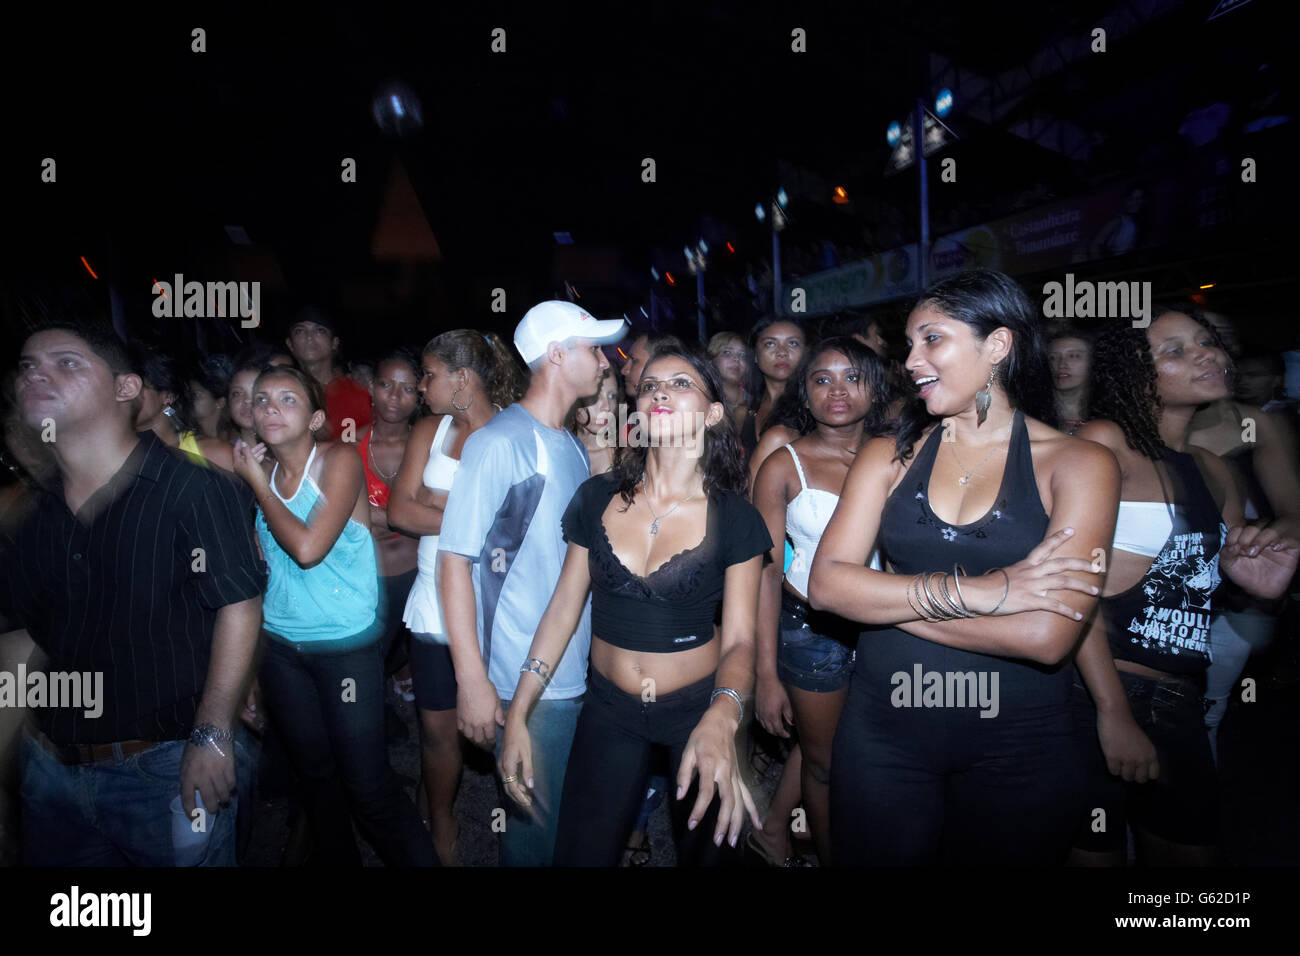 Une rave party sauvage ou Aparelhagem dans un entrepôt géant à Belem, Para, Brésil Banque D'Images